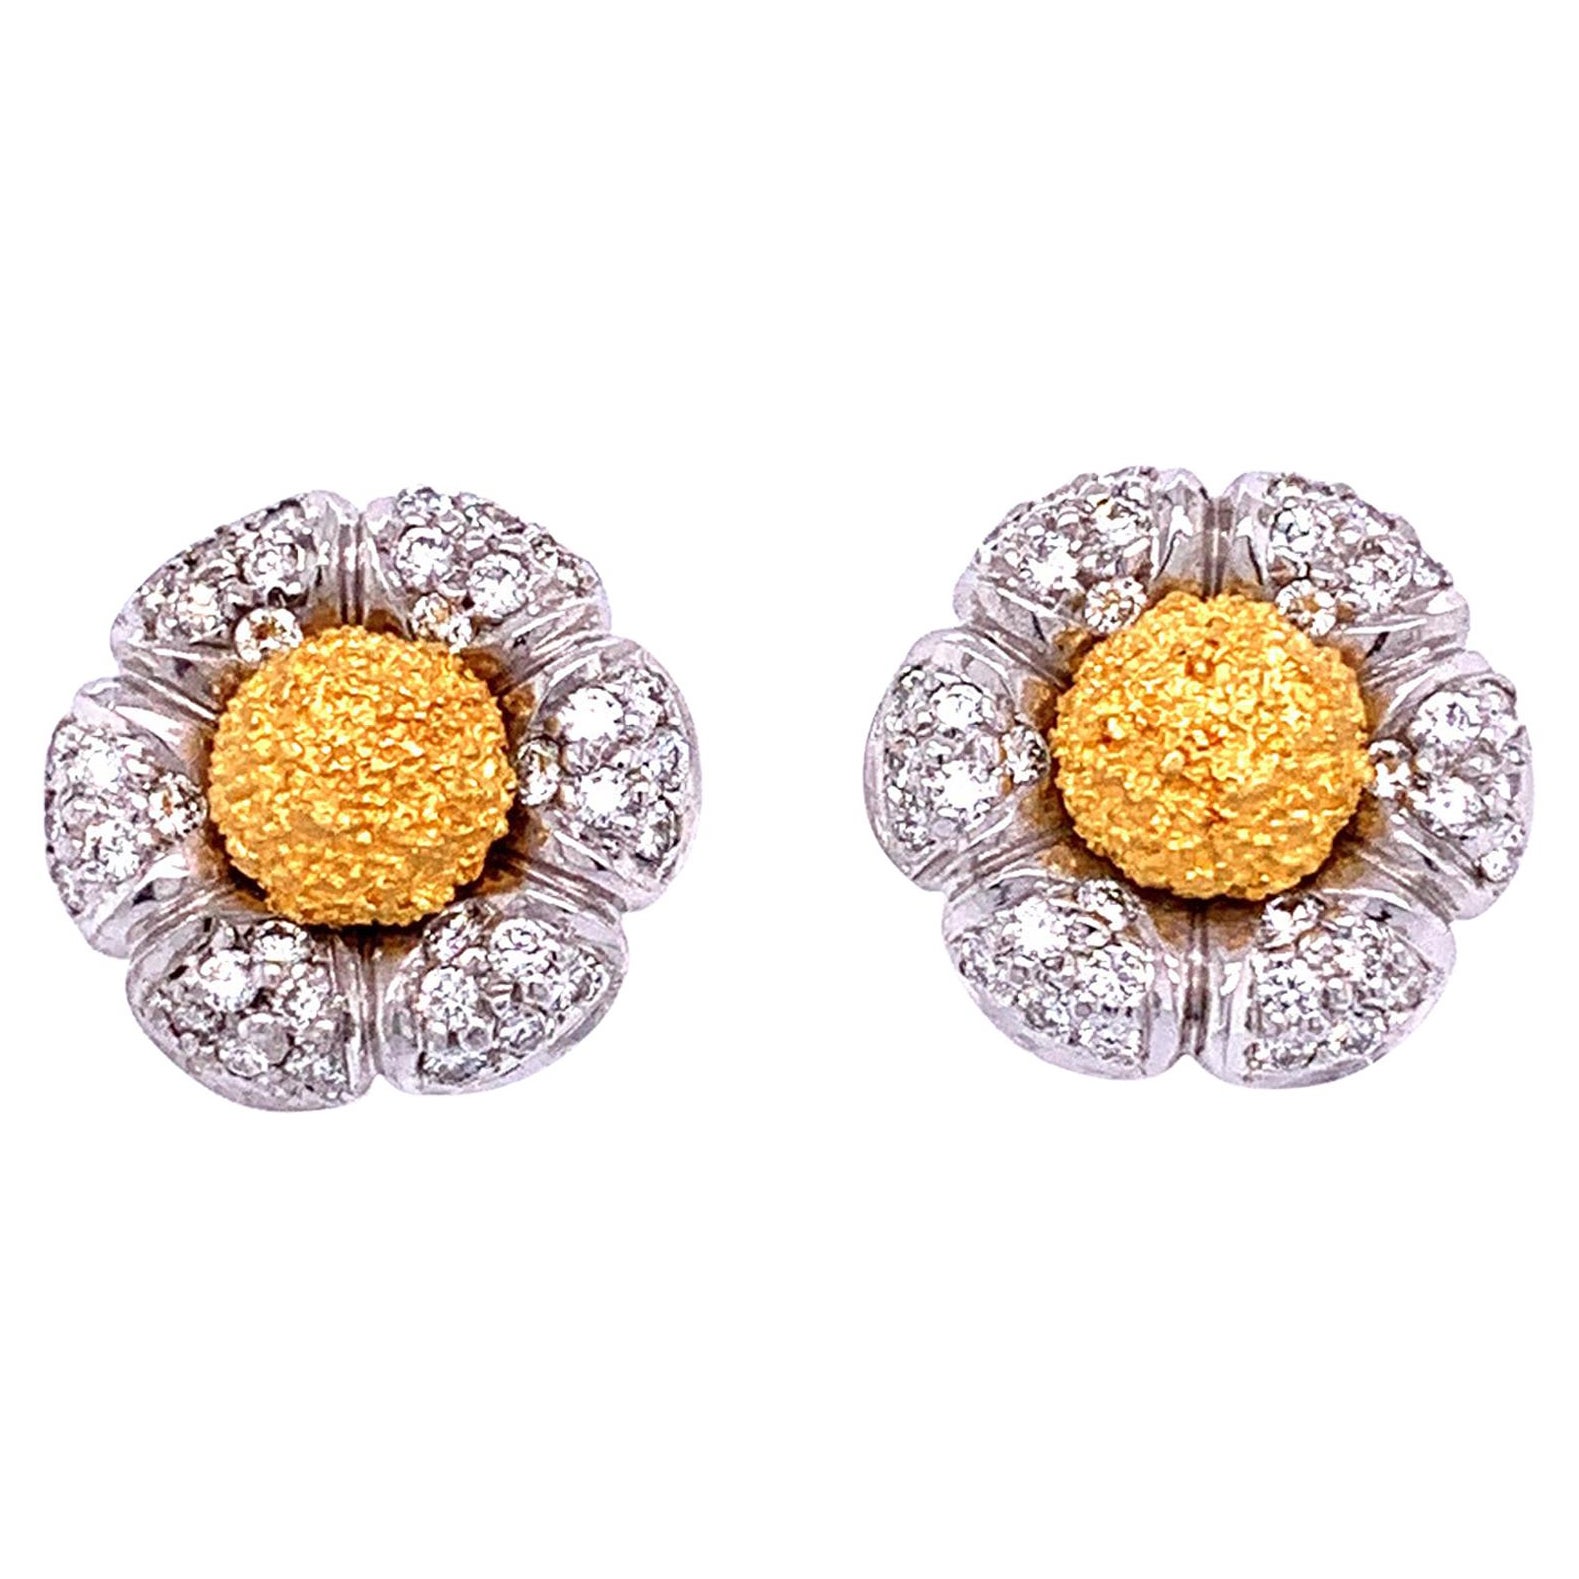 White Diamond and 18 Karat Gold "Flower" Stud Earrings For Sale